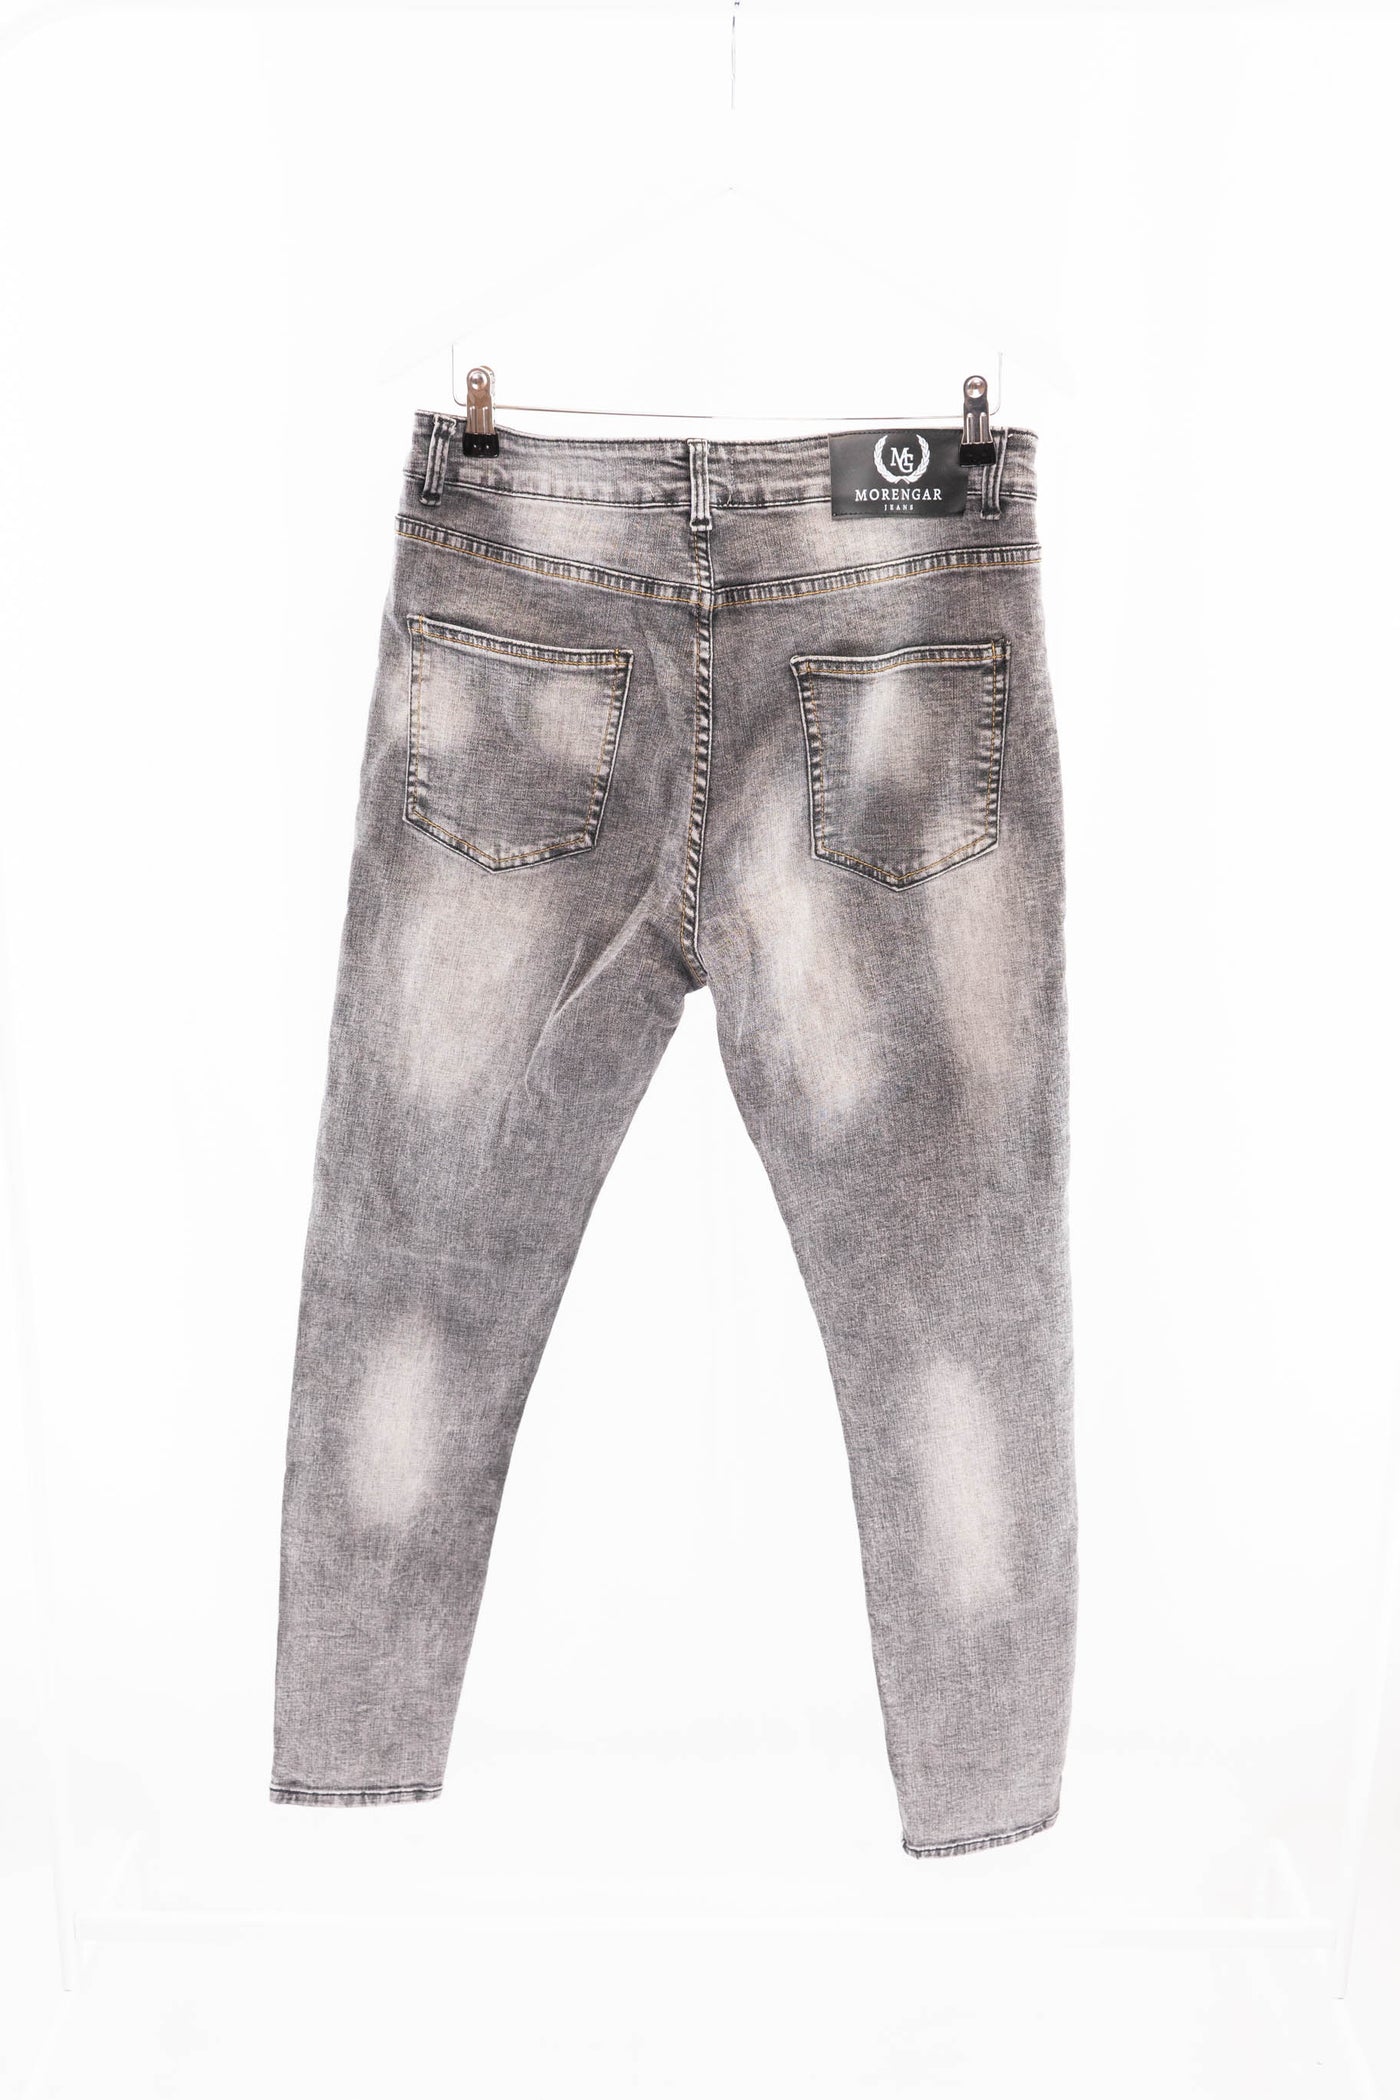 Jeans grises